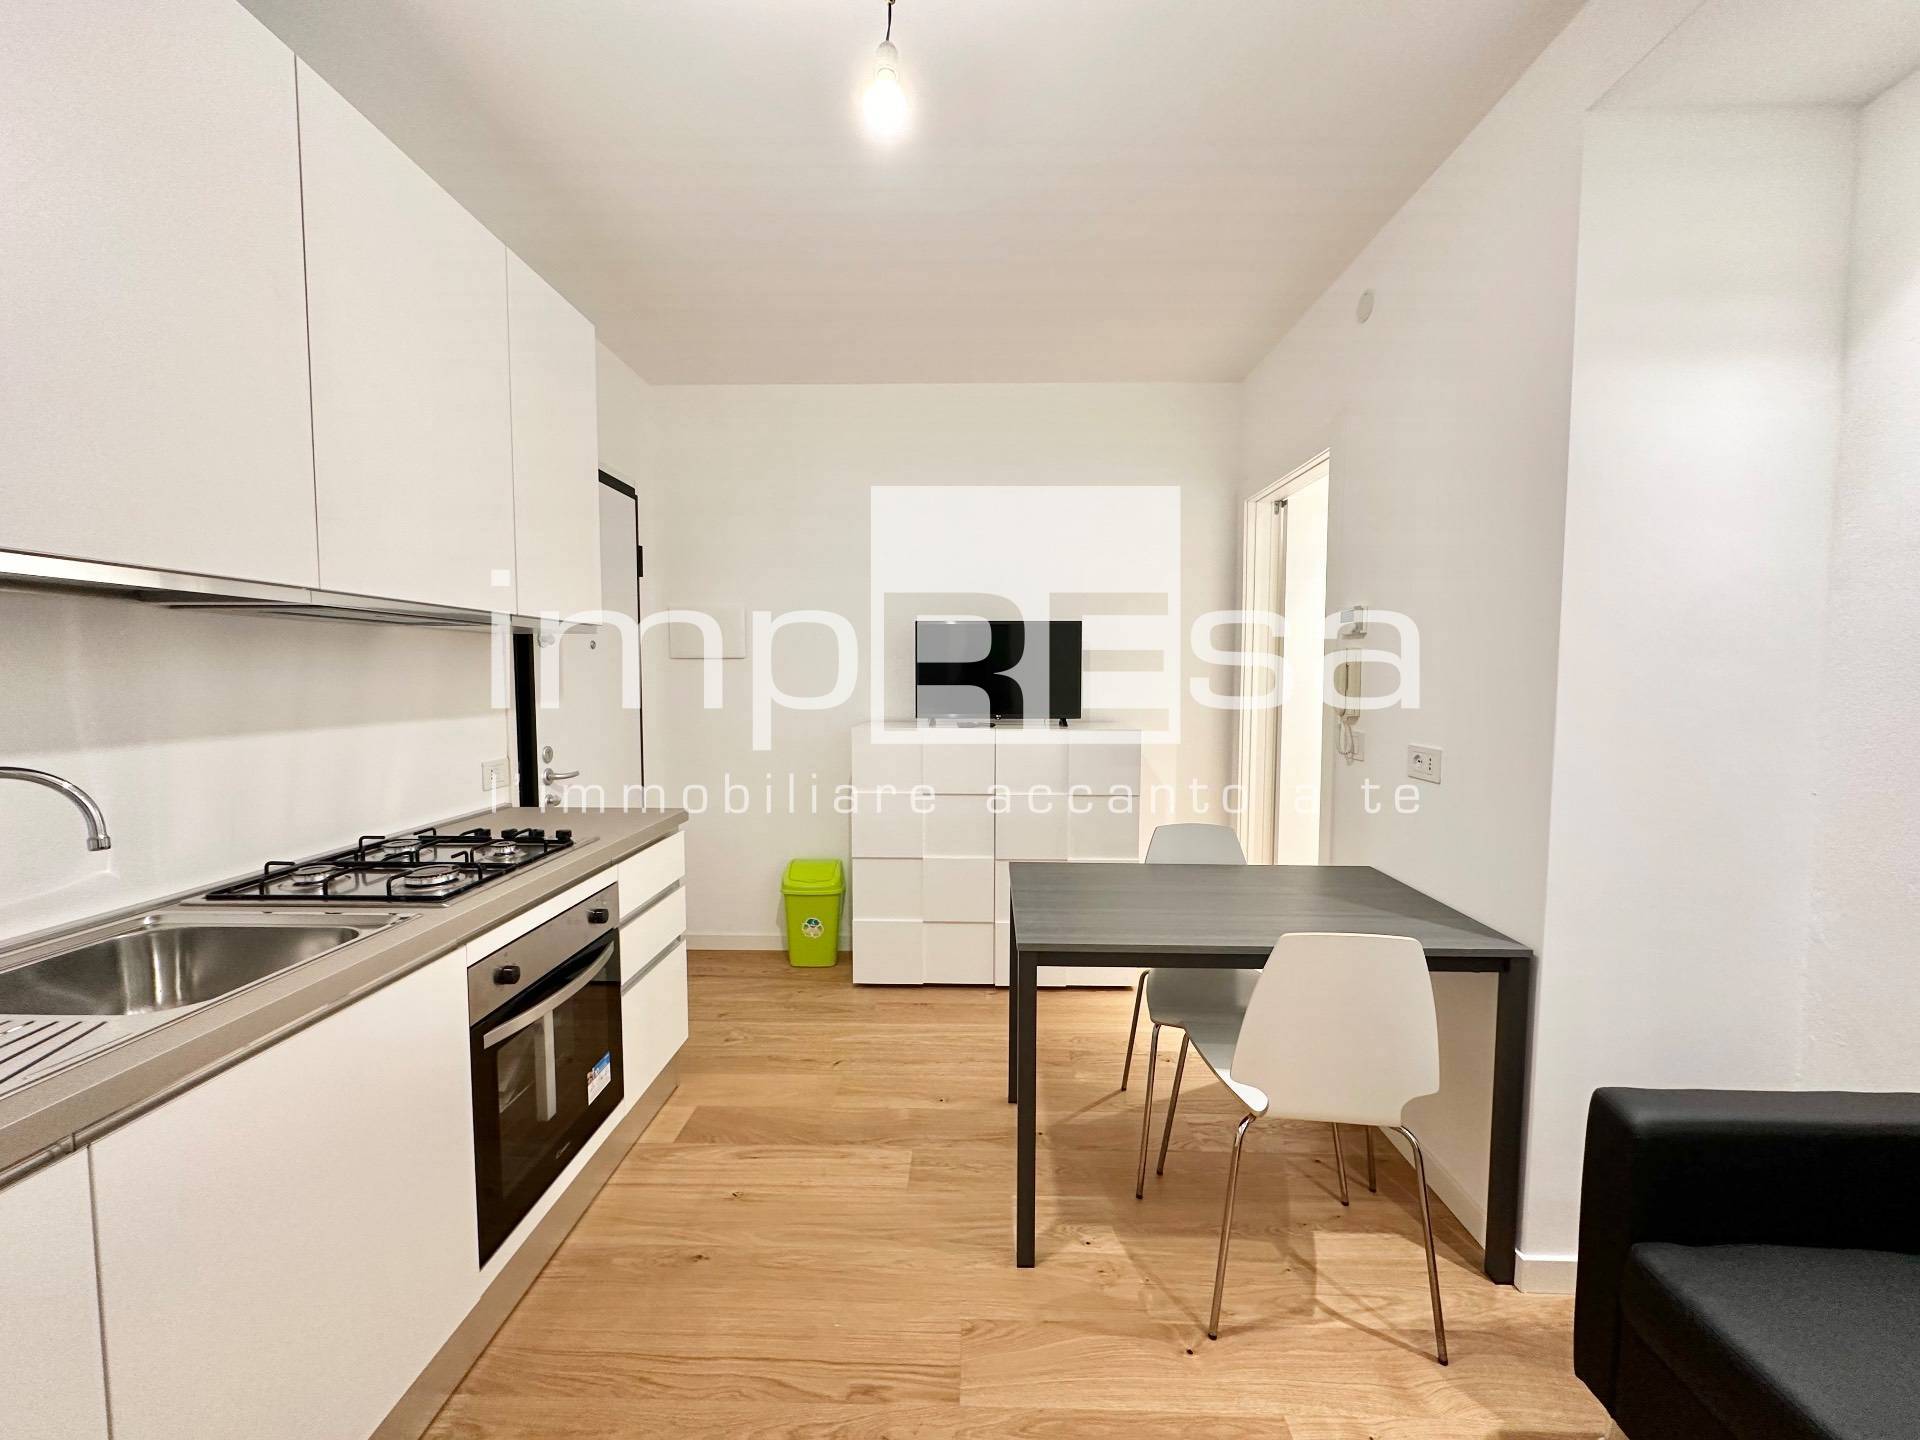 Appartamento in vendita a Villorba, 2 locali, zona ane, prezzo € 105.000 | PortaleAgenzieImmobiliari.it